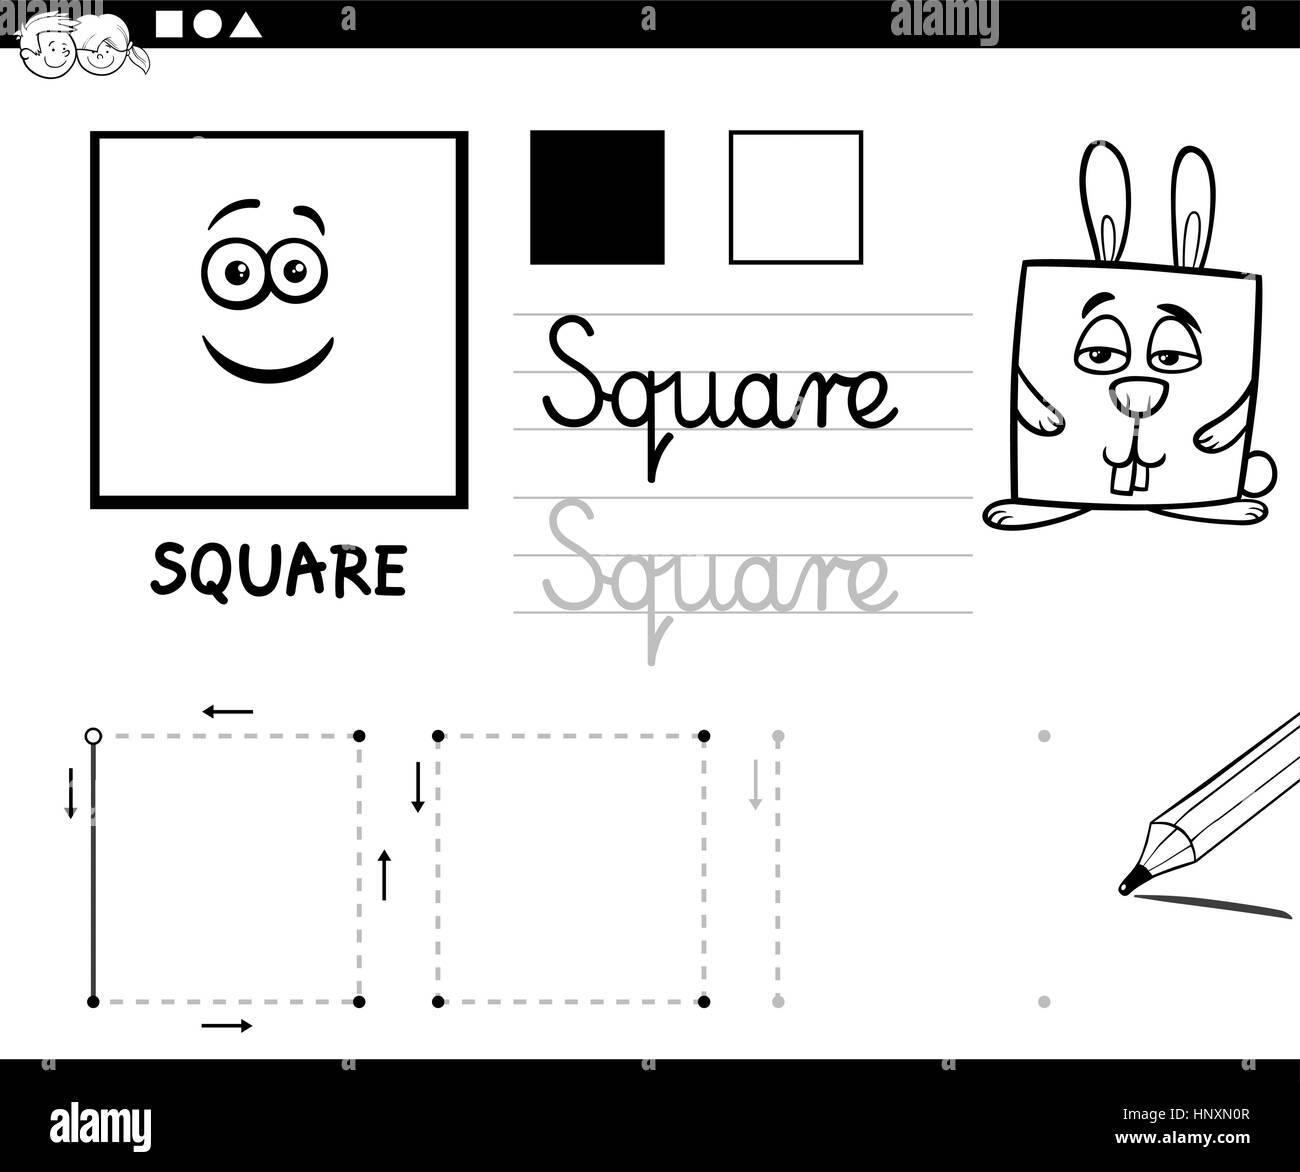 Schwarz / weiß pädagogische Cartoon Illustration des quadratischen geometrische Grundform für Kinder Malvorlagen Stock Vektor